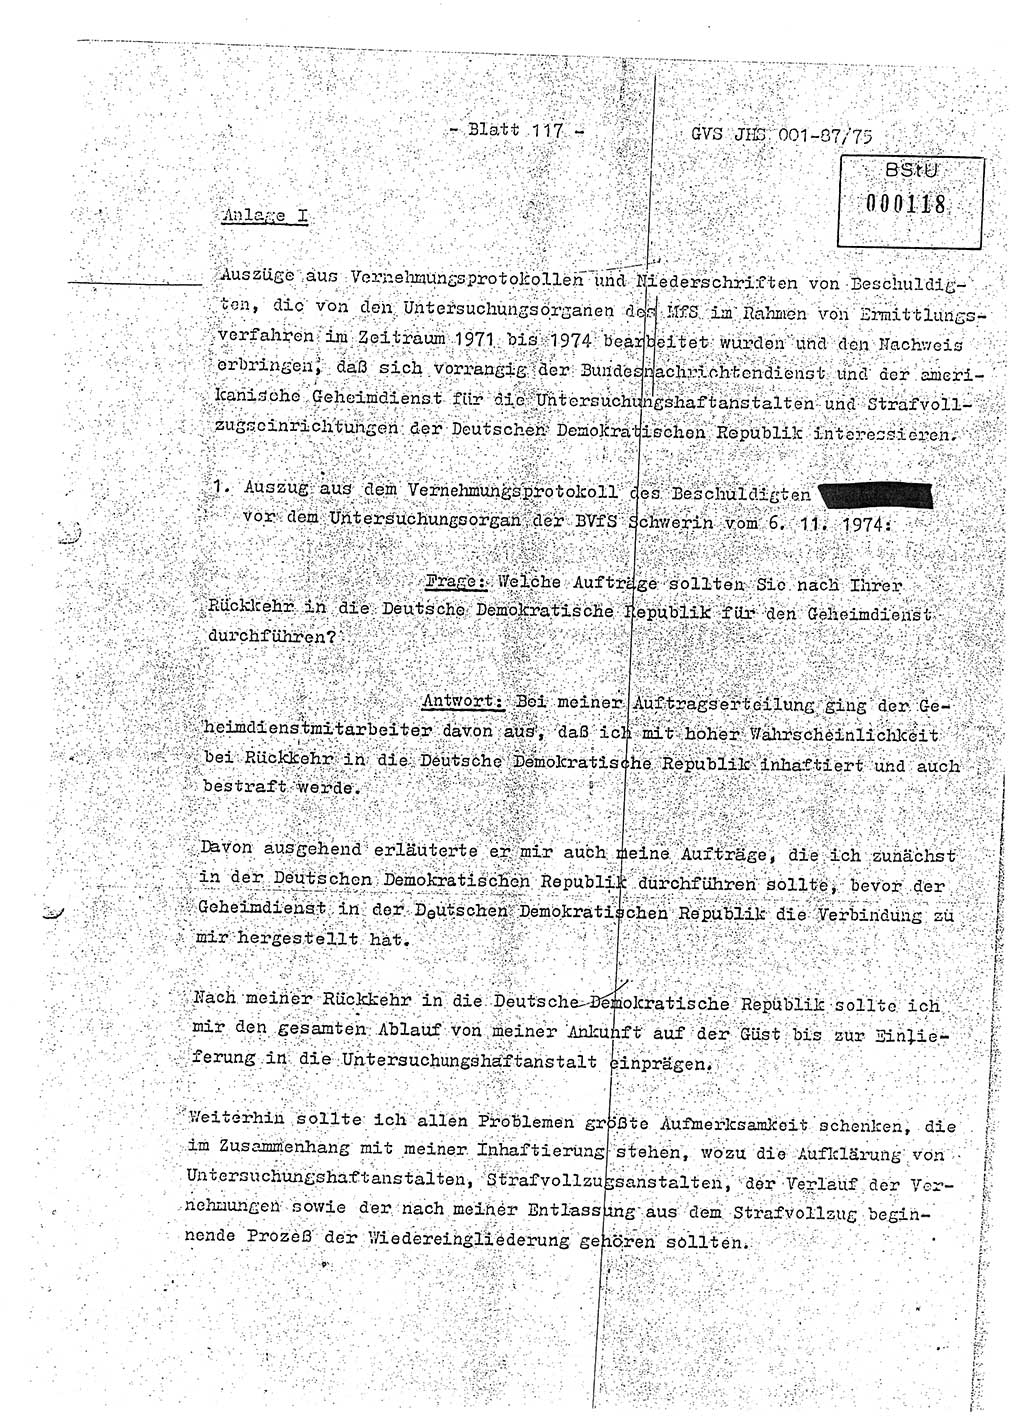 Diplomarbeit Hauptmann Volkmar Heinz (Abt. ⅩⅣ), Oberleutnant Lothar Rüdiger (BV Lpz. Abt. Ⅺ), Ministerium für Staatssicherheit (MfS) [Deutsche Demokratische Republik (DDR)], Juristische Hochschule (JHS), Geheime Verschlußsache (GVS) o001-87/75, Potsdam 1975, Seite 117 (Dipl.-Arb. MfS DDR JHS GVS o001-87/75 1975, S. 117)